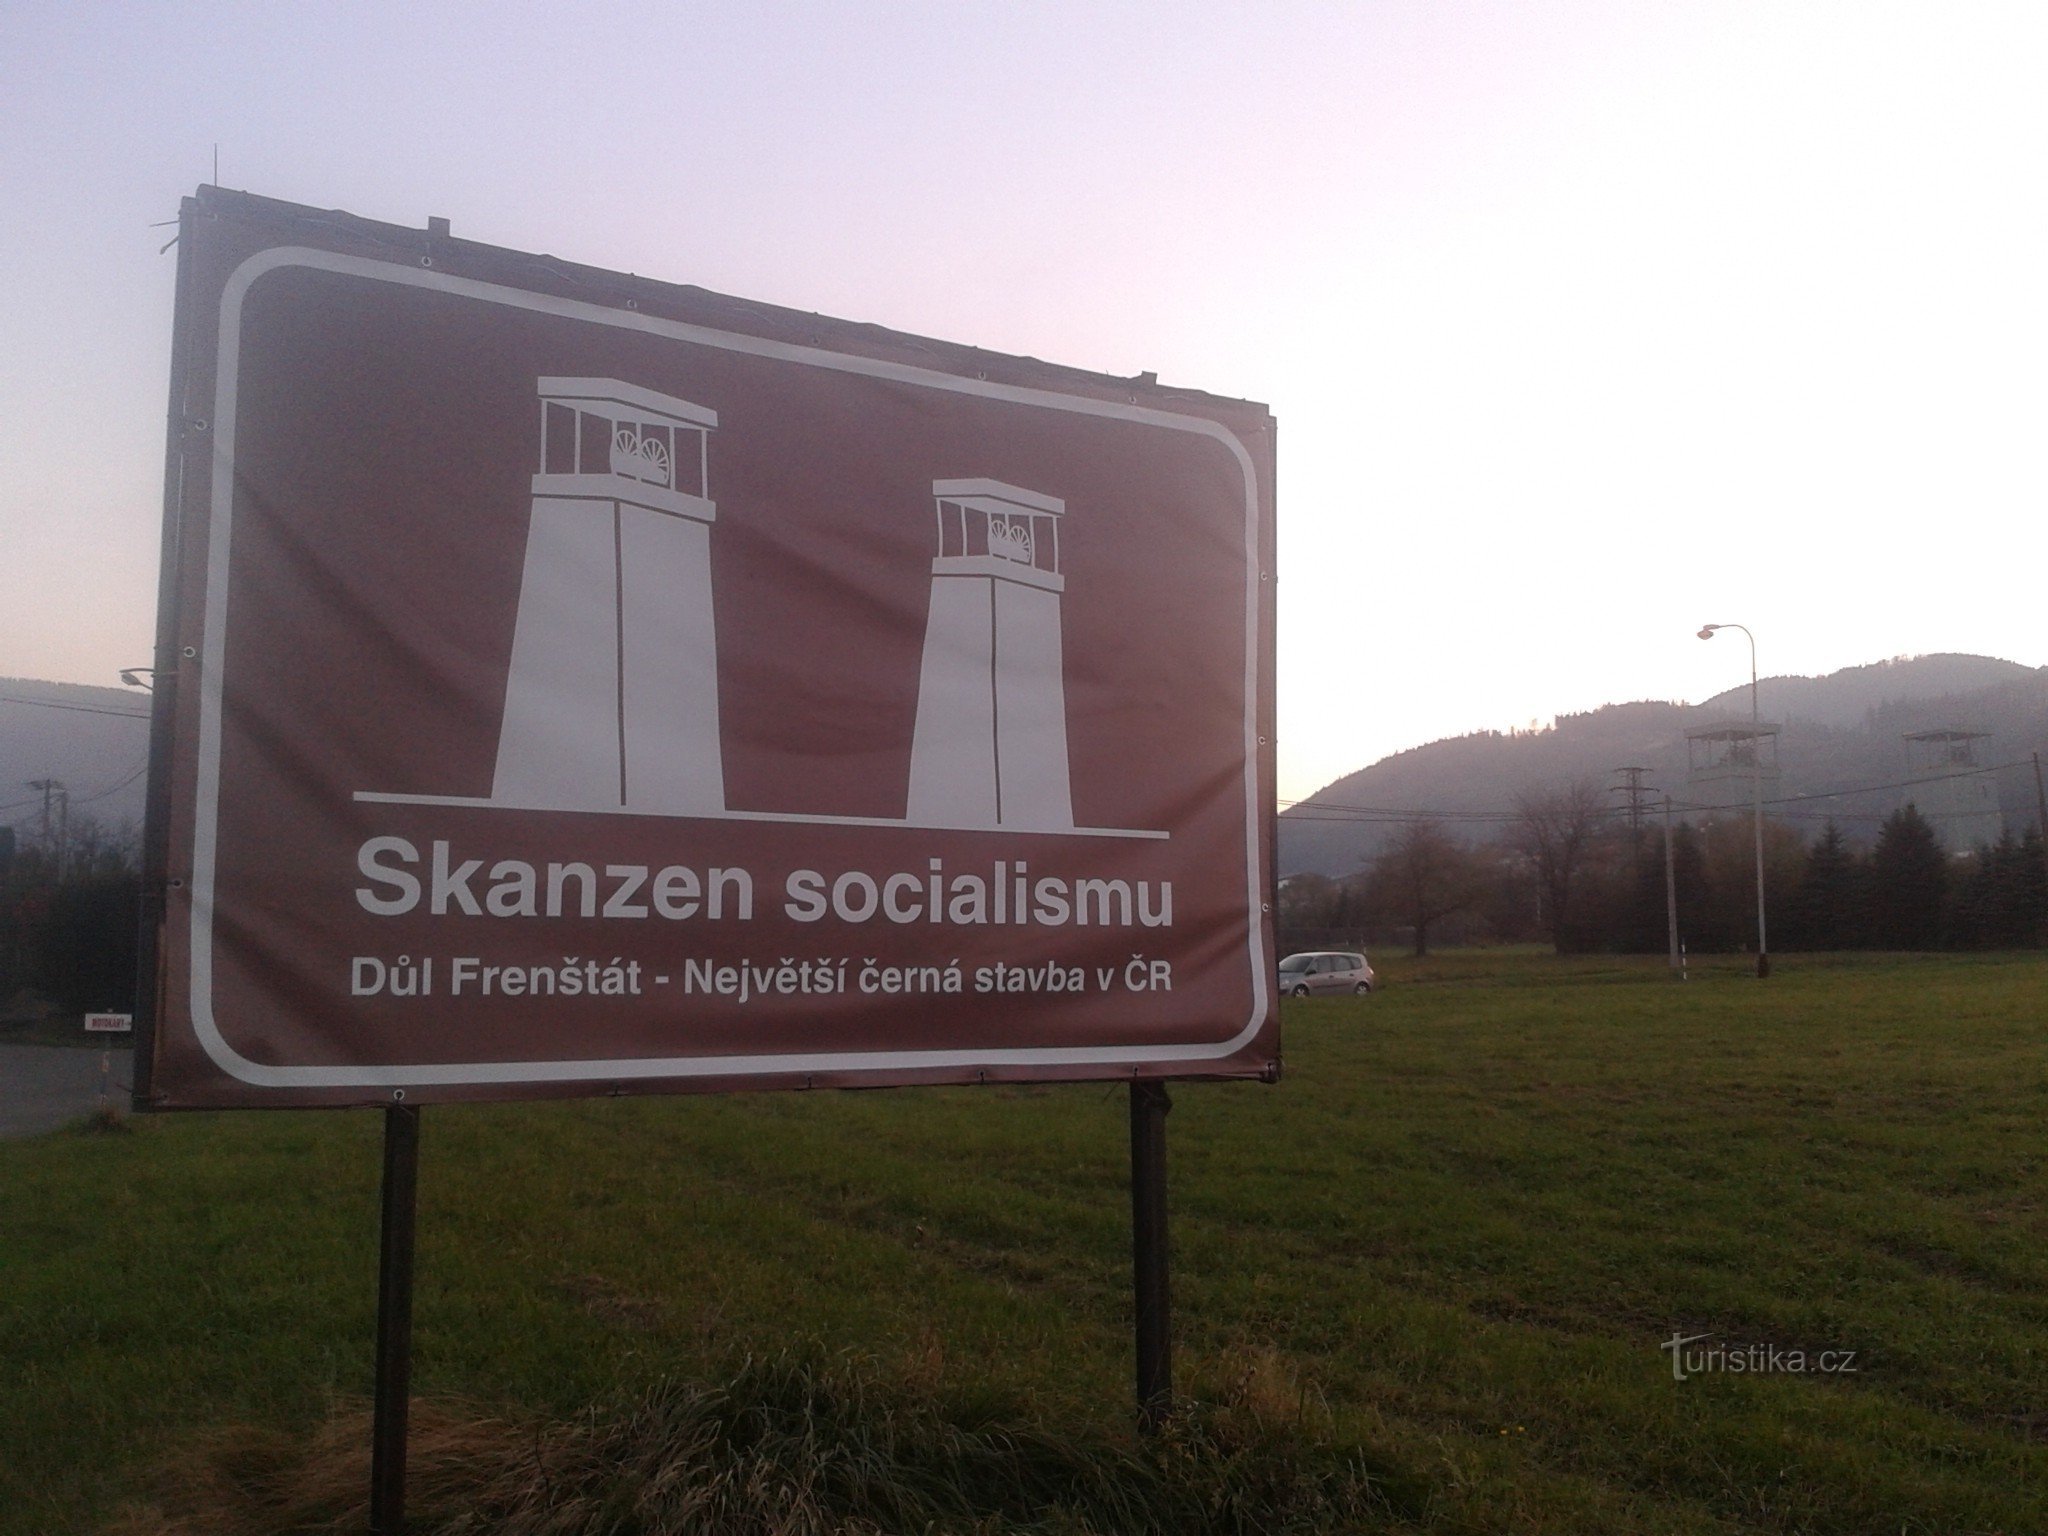 Найбільший соціалістичний музей під відкритим небом у Чехії